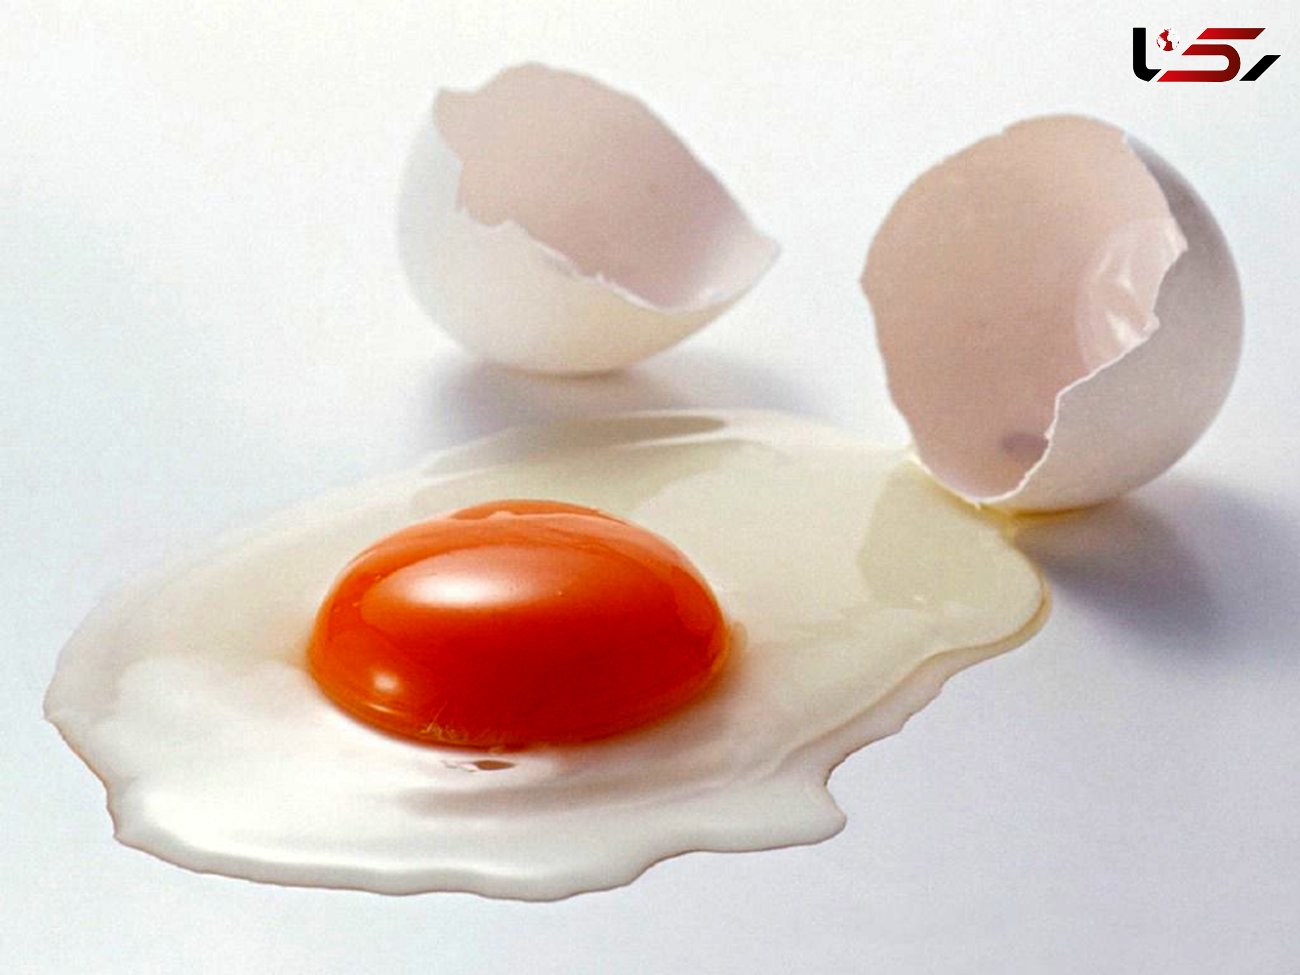 همه آنچه که باید درباره نگهداری از تخم مرغ بدانید!